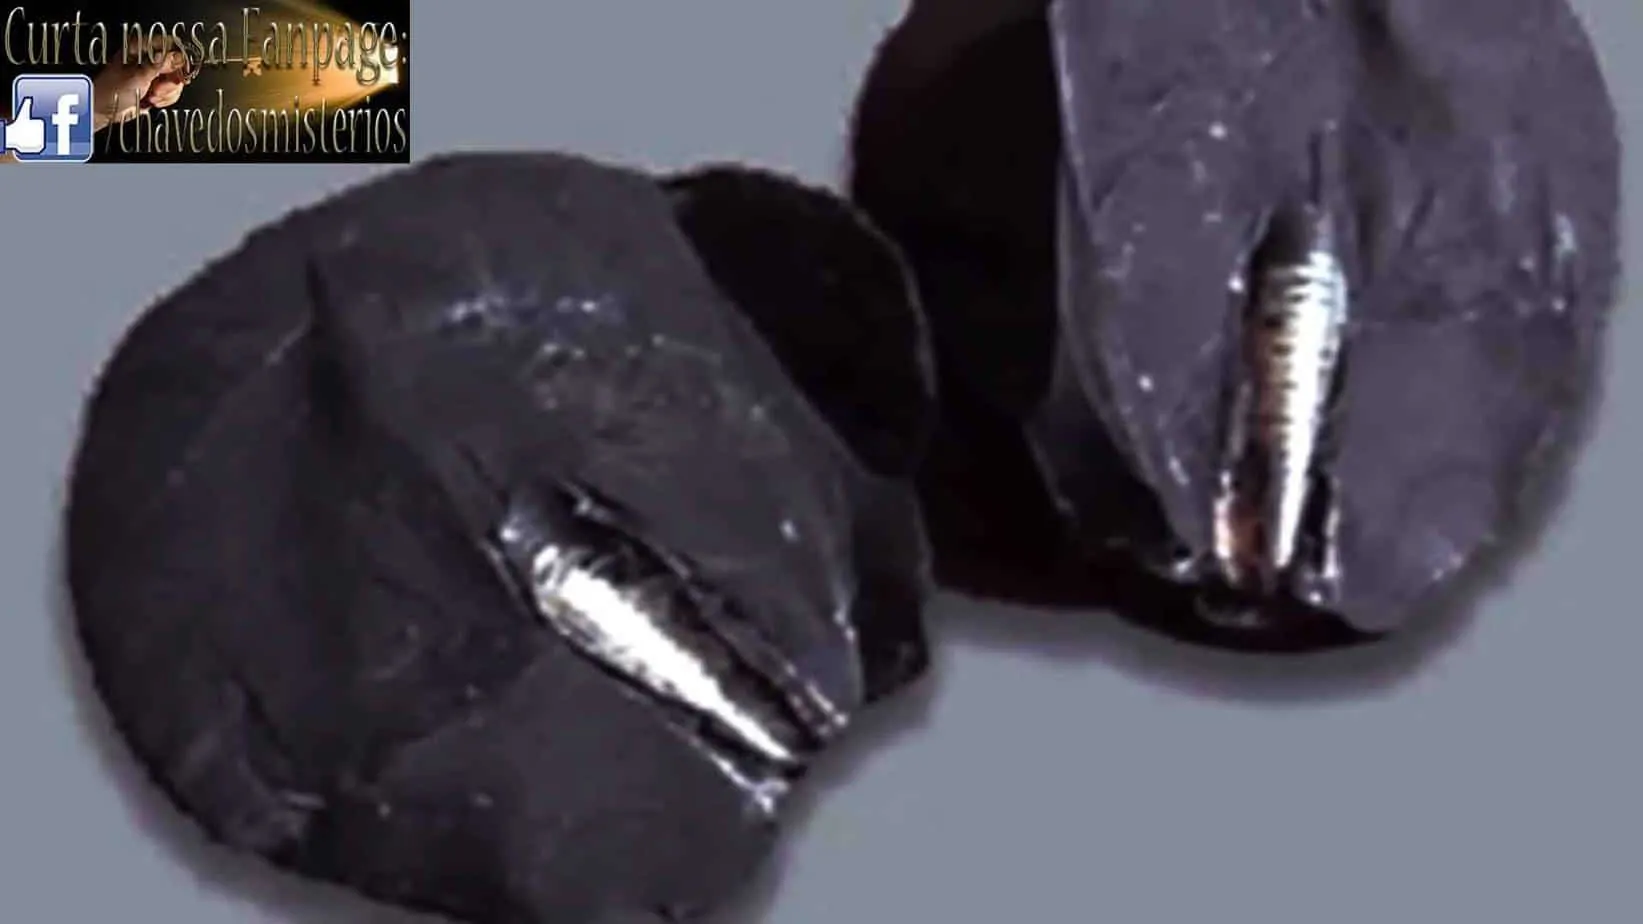 Um “artefato impossível” encontrado nos restos de um meteorito